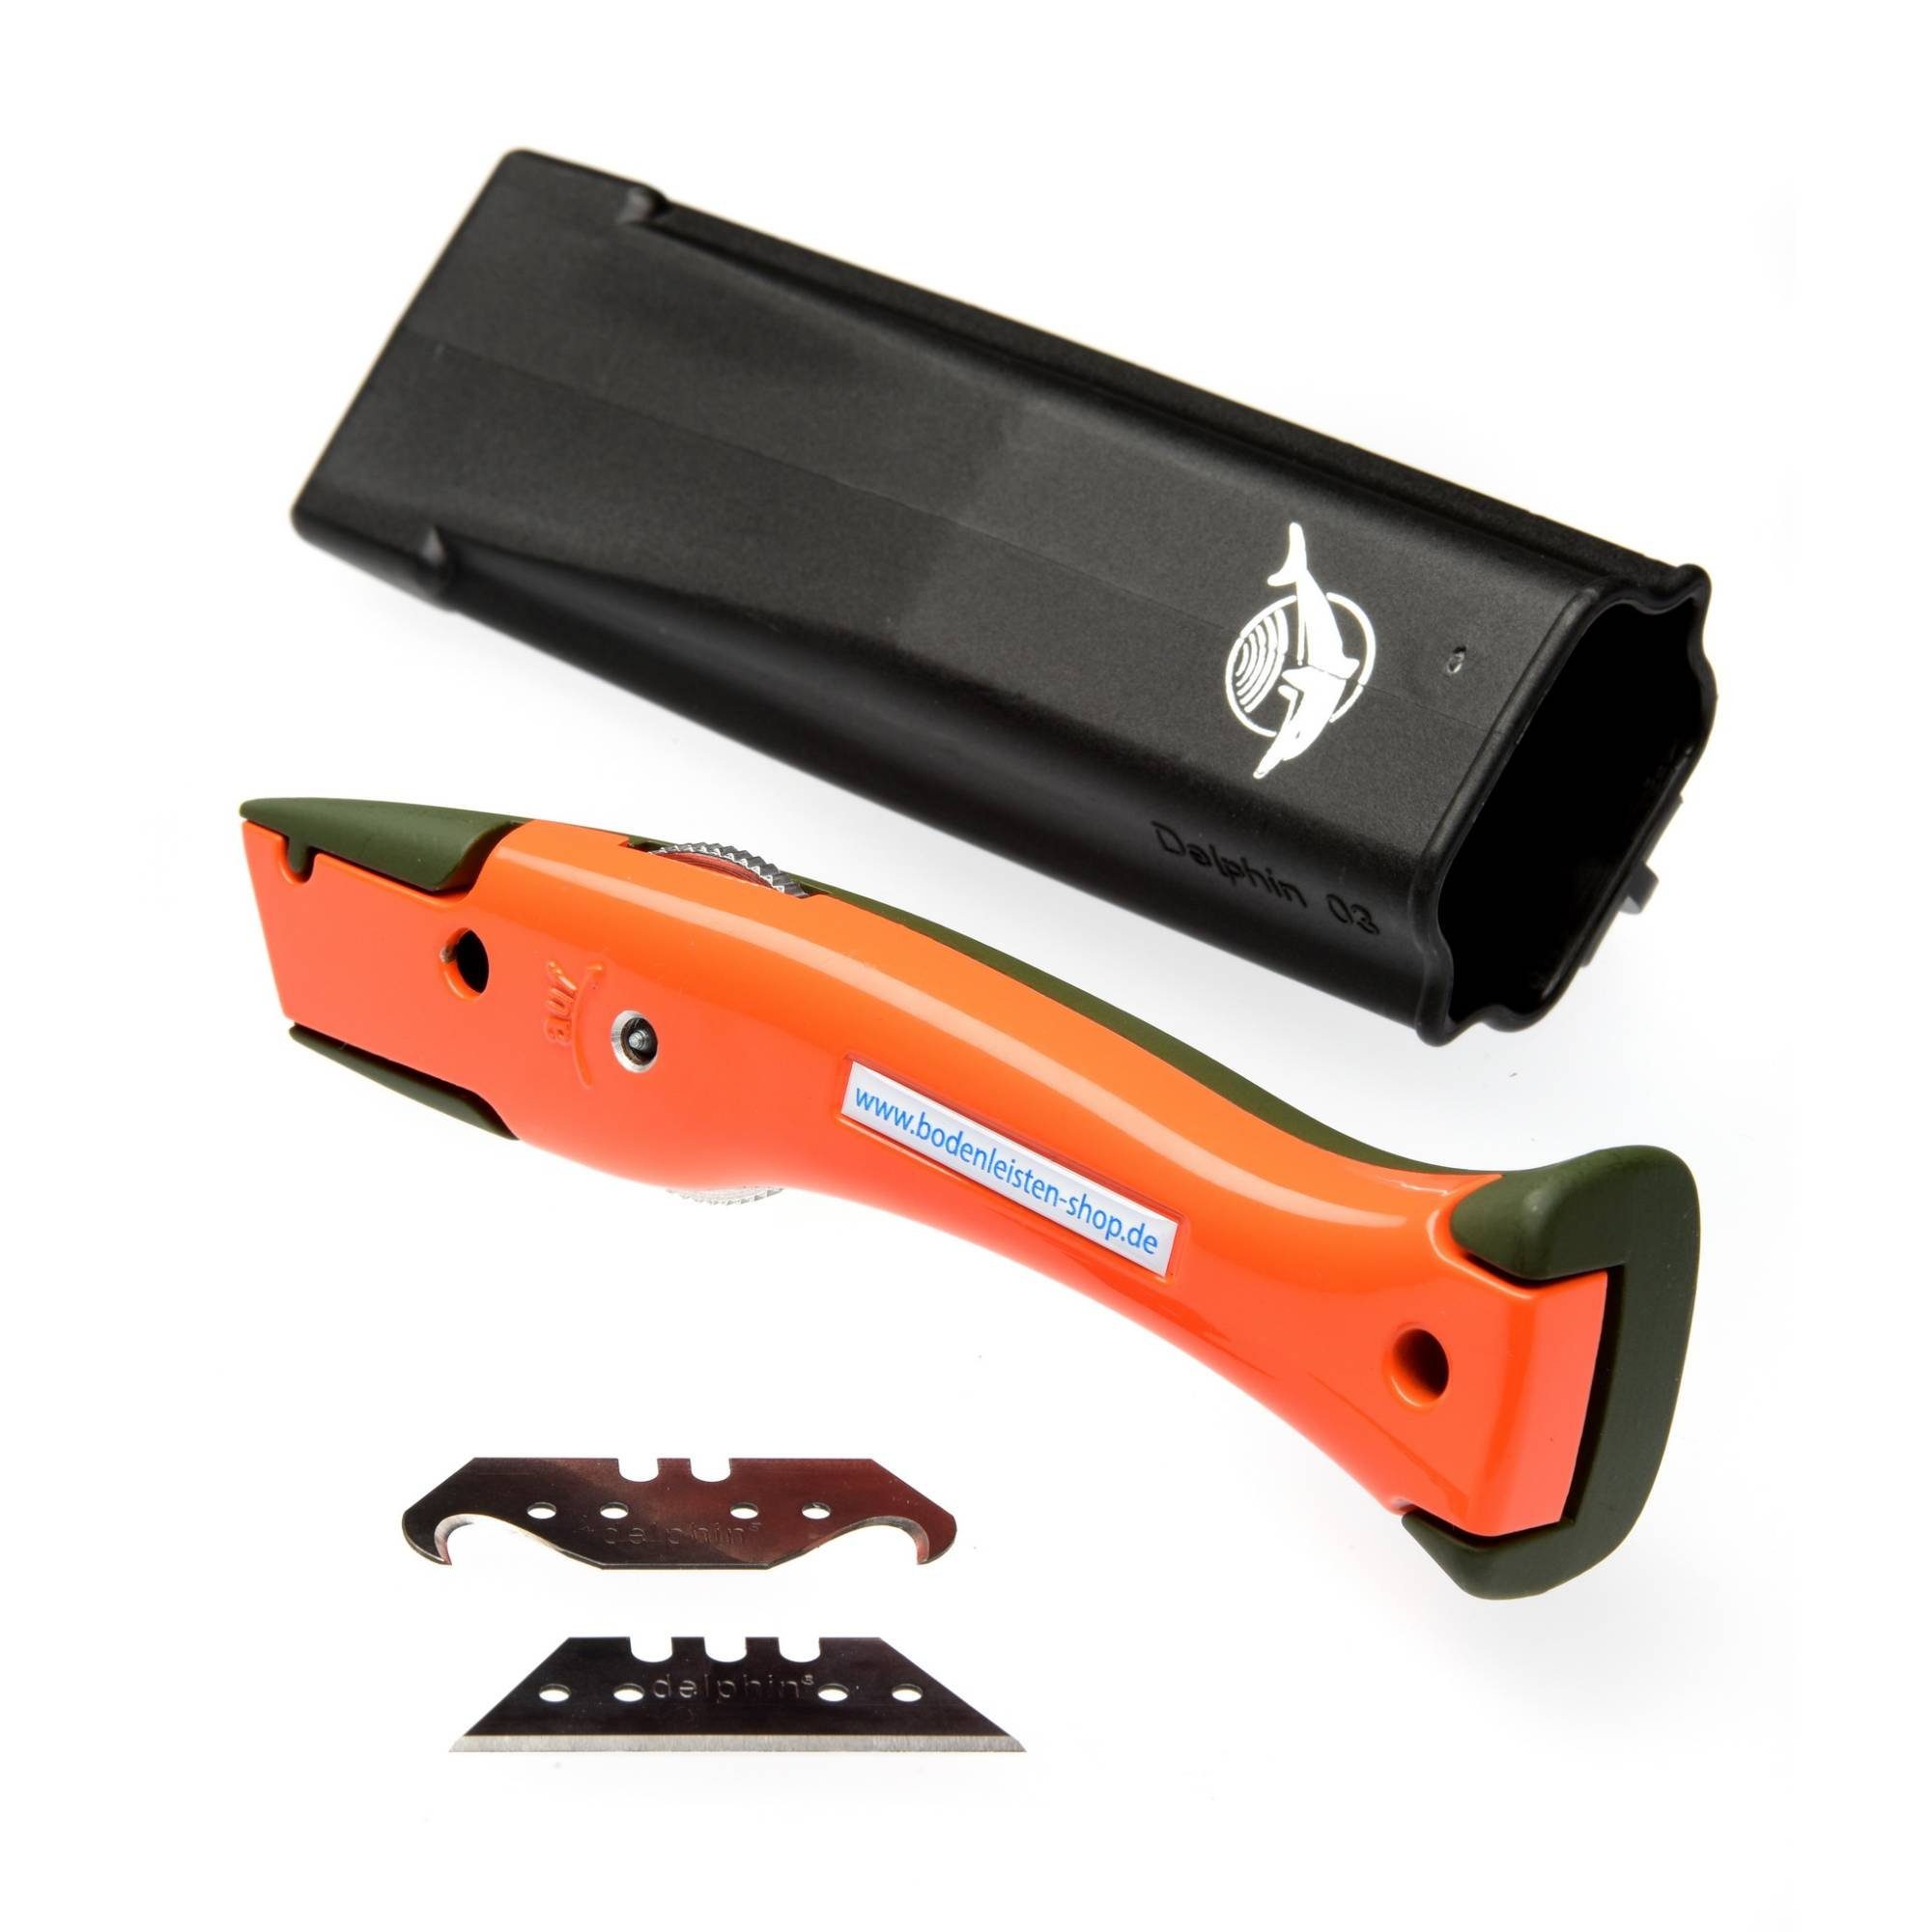 Delphin Cutter Delphin®-03 Style-Edition Universalmesser Cuttermesser Olivgrün - orange